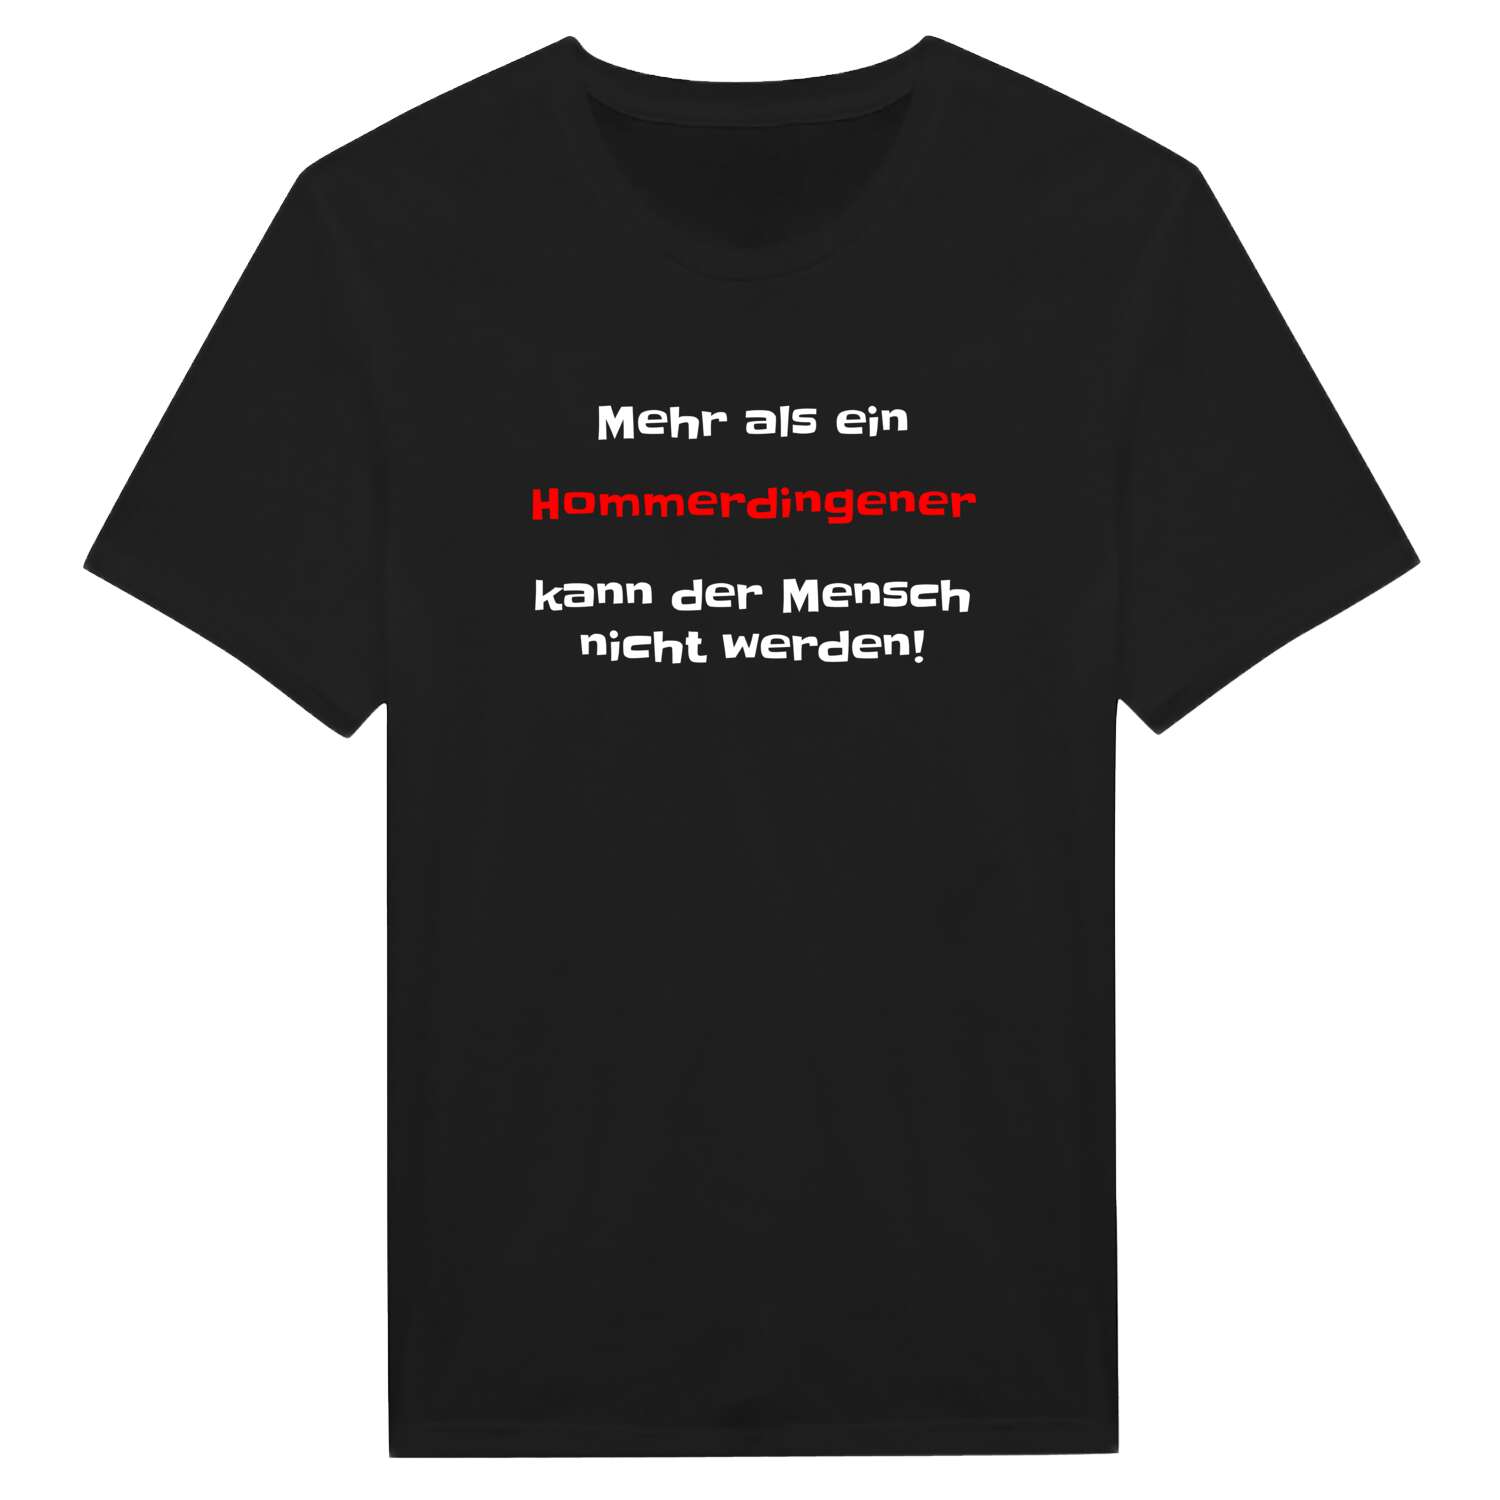 Hommerdingen T-Shirt »Mehr als ein«